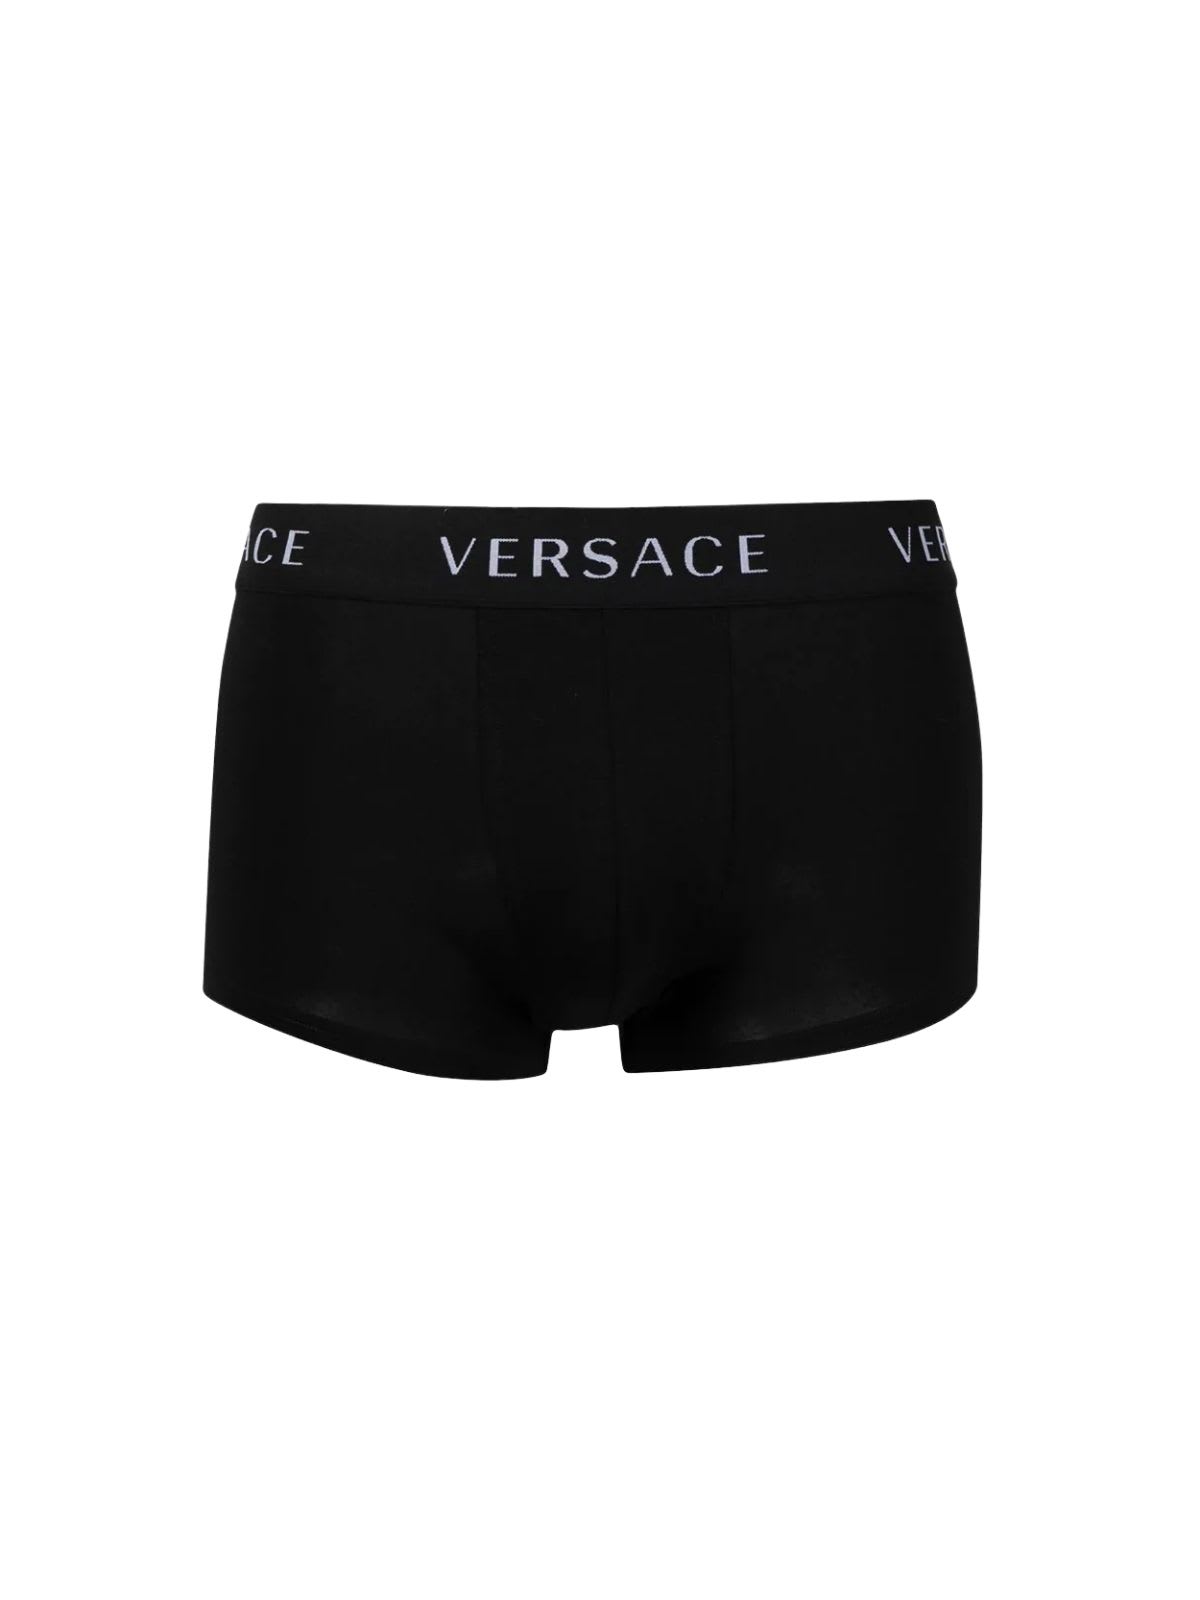 Versace Tri Pack Underwear